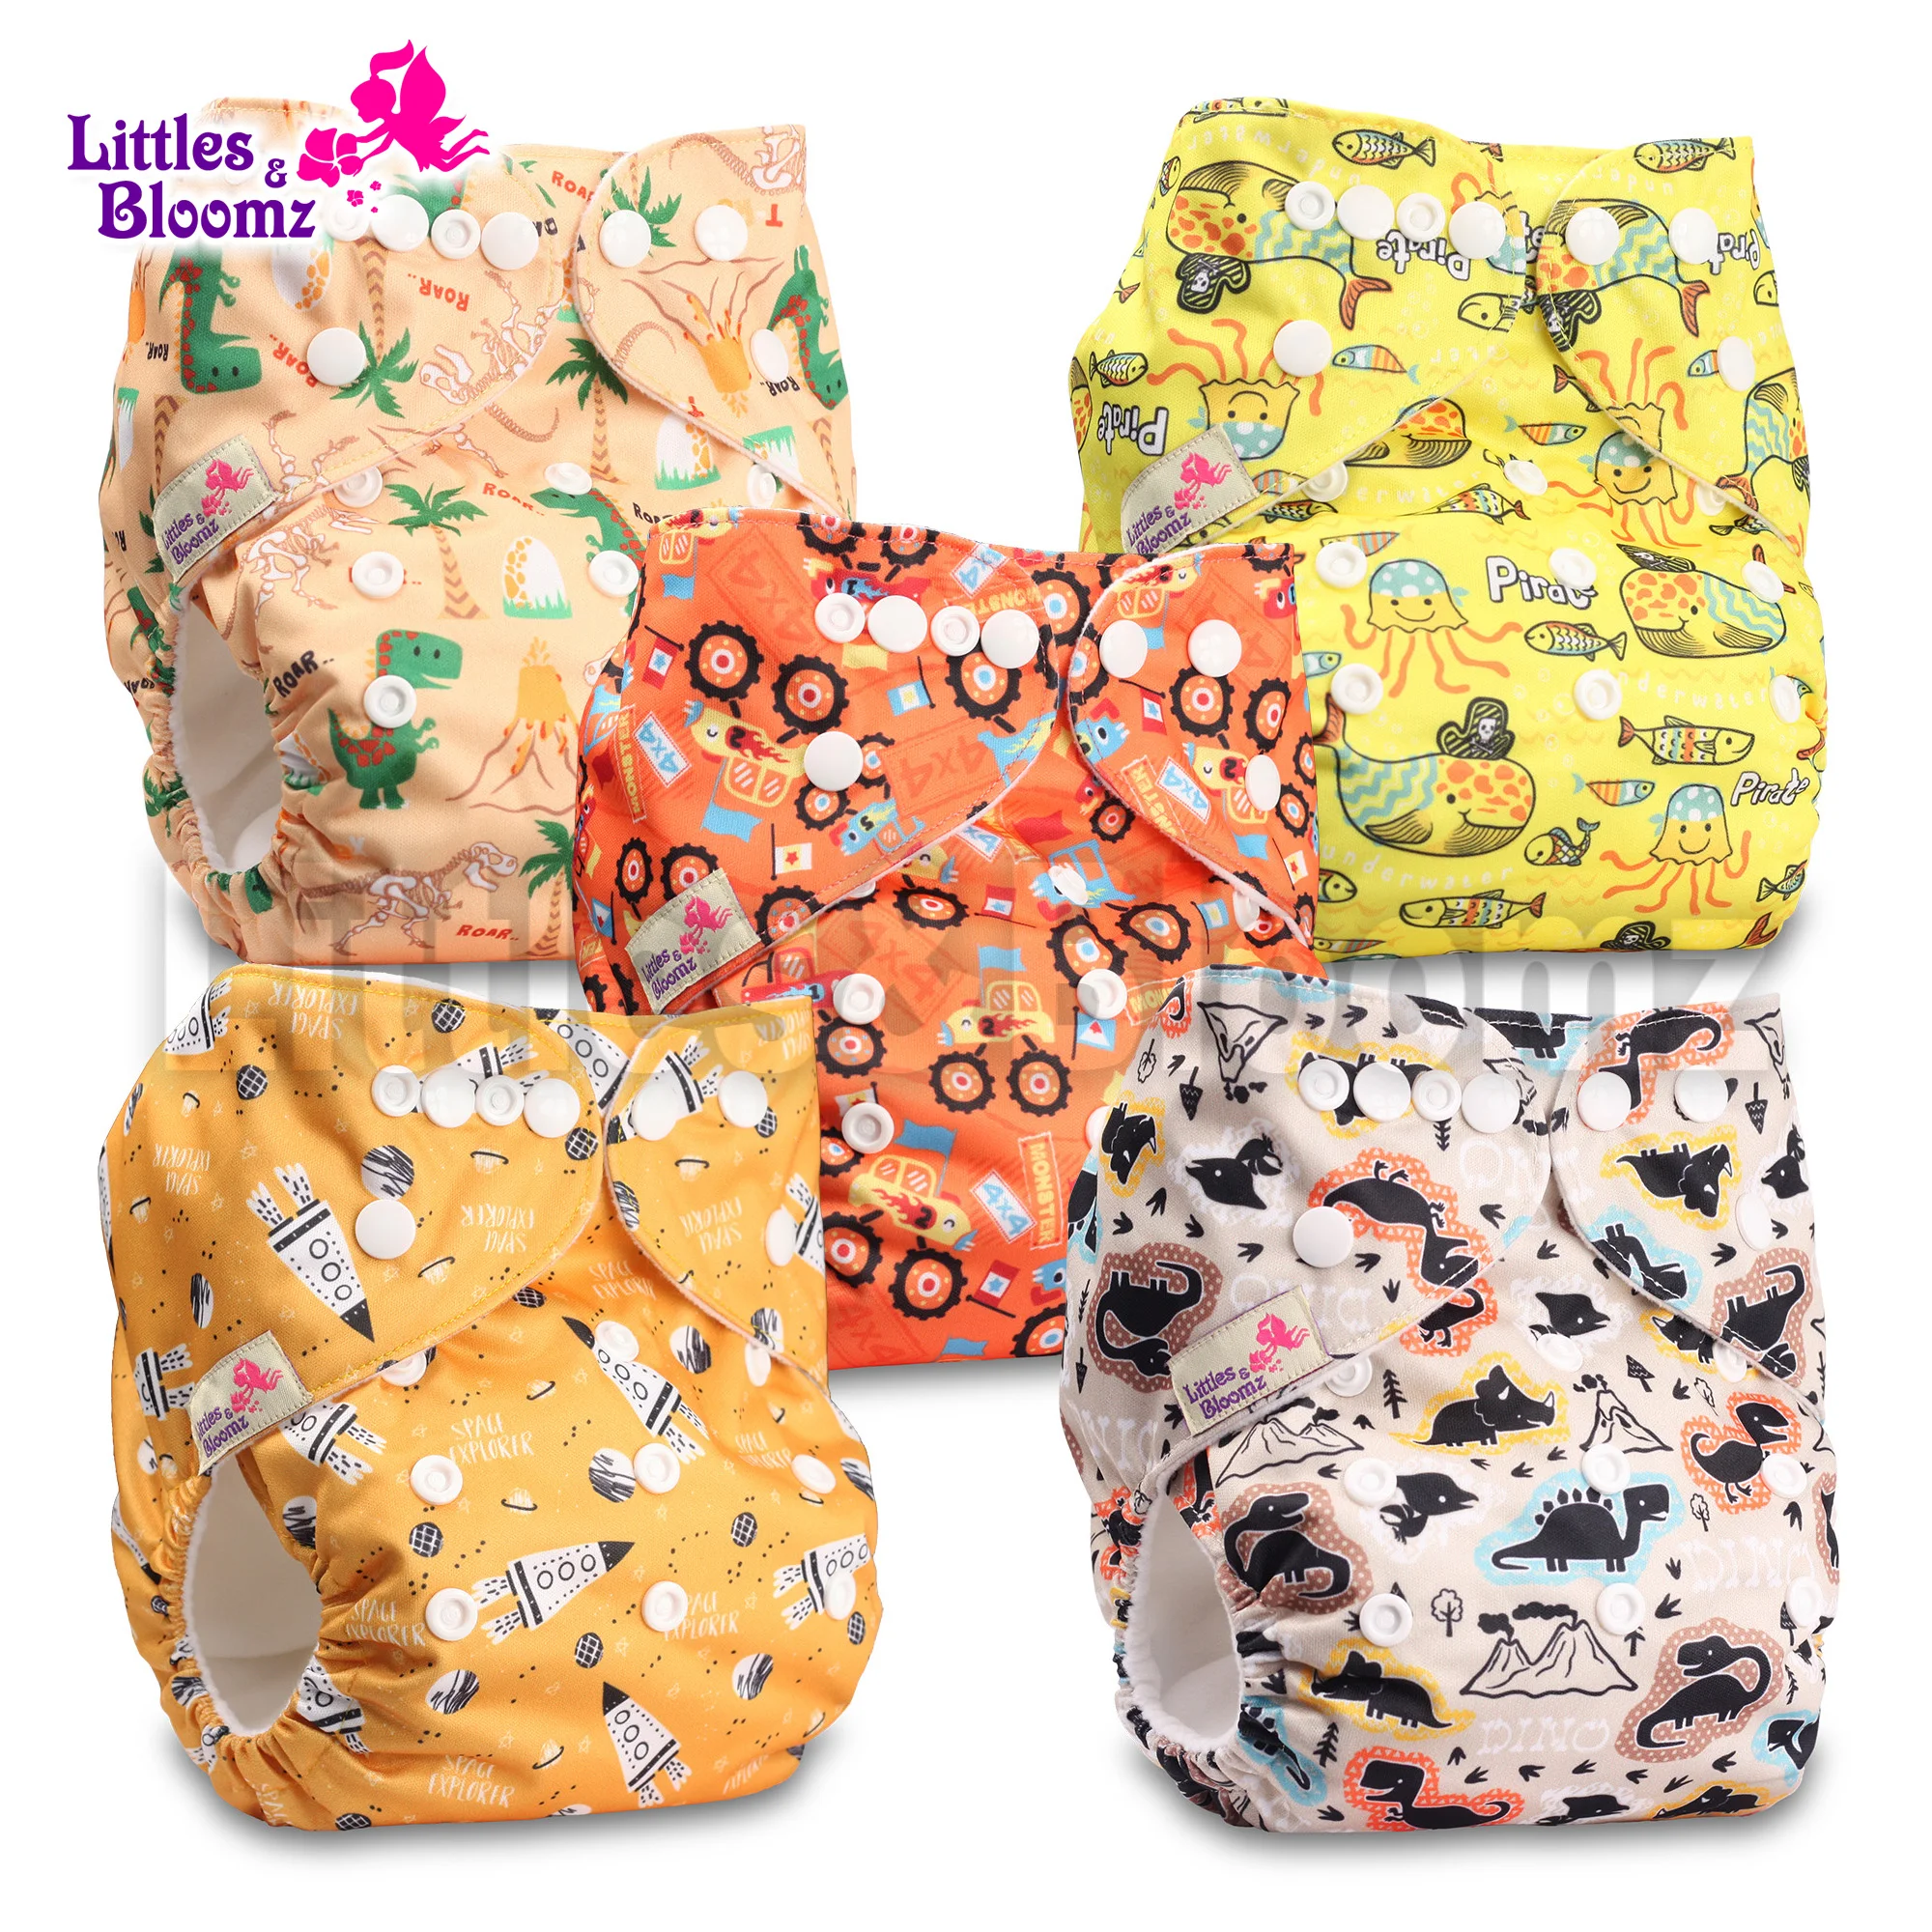 [Littles & Bloomz] 5 шт. / компл. Детский Моющийся Многоразовый карманный подгузник из натуральной ткани, 5 подгузников и 5 вставок из микрофибры в одном наборе